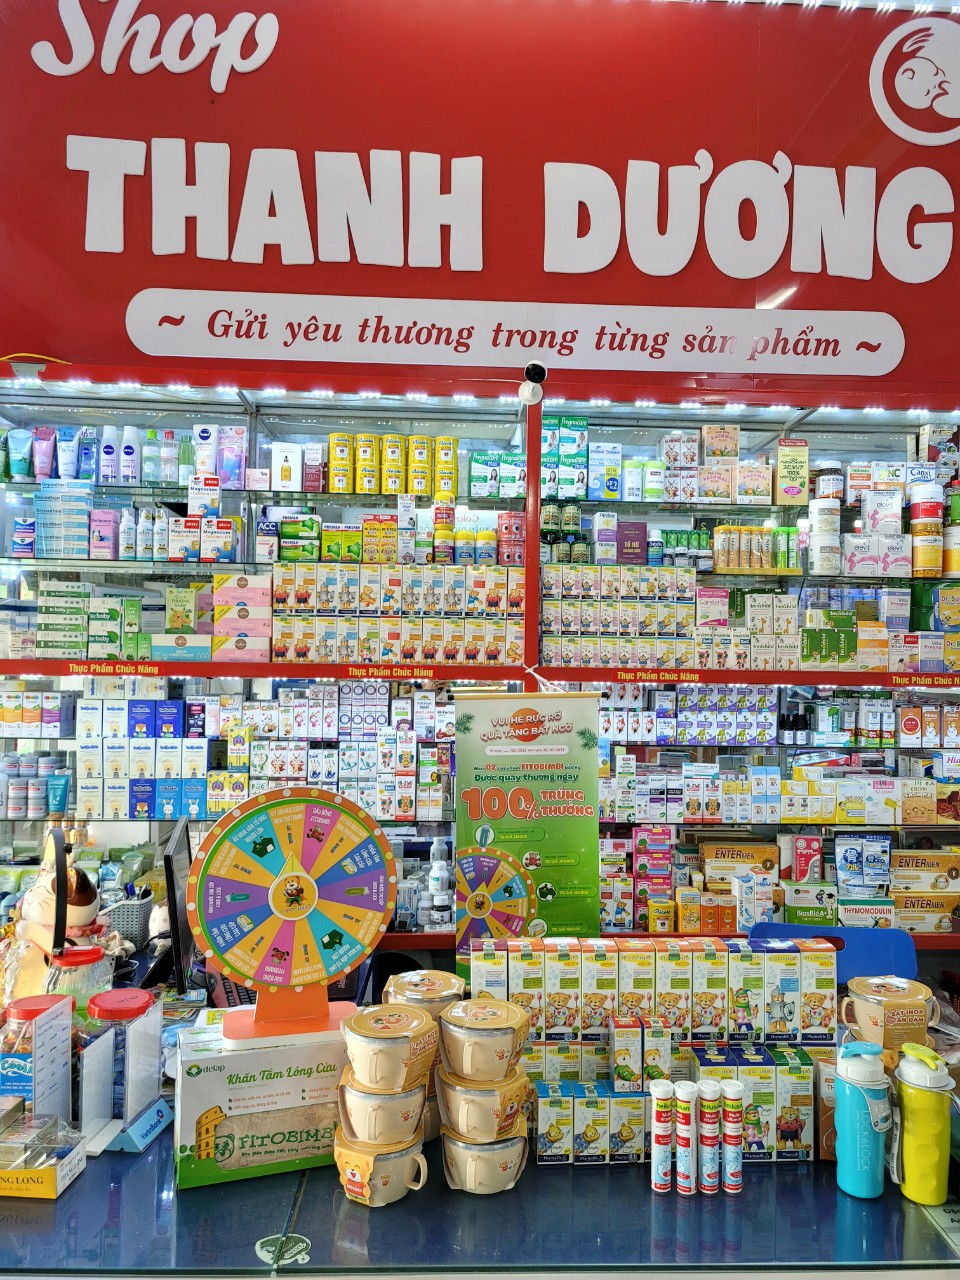 Shop Mẹ Và Bé Thanh Dương - Giúp cha mẹ tạo dựng ký ức ngọt ngào cho con - 2